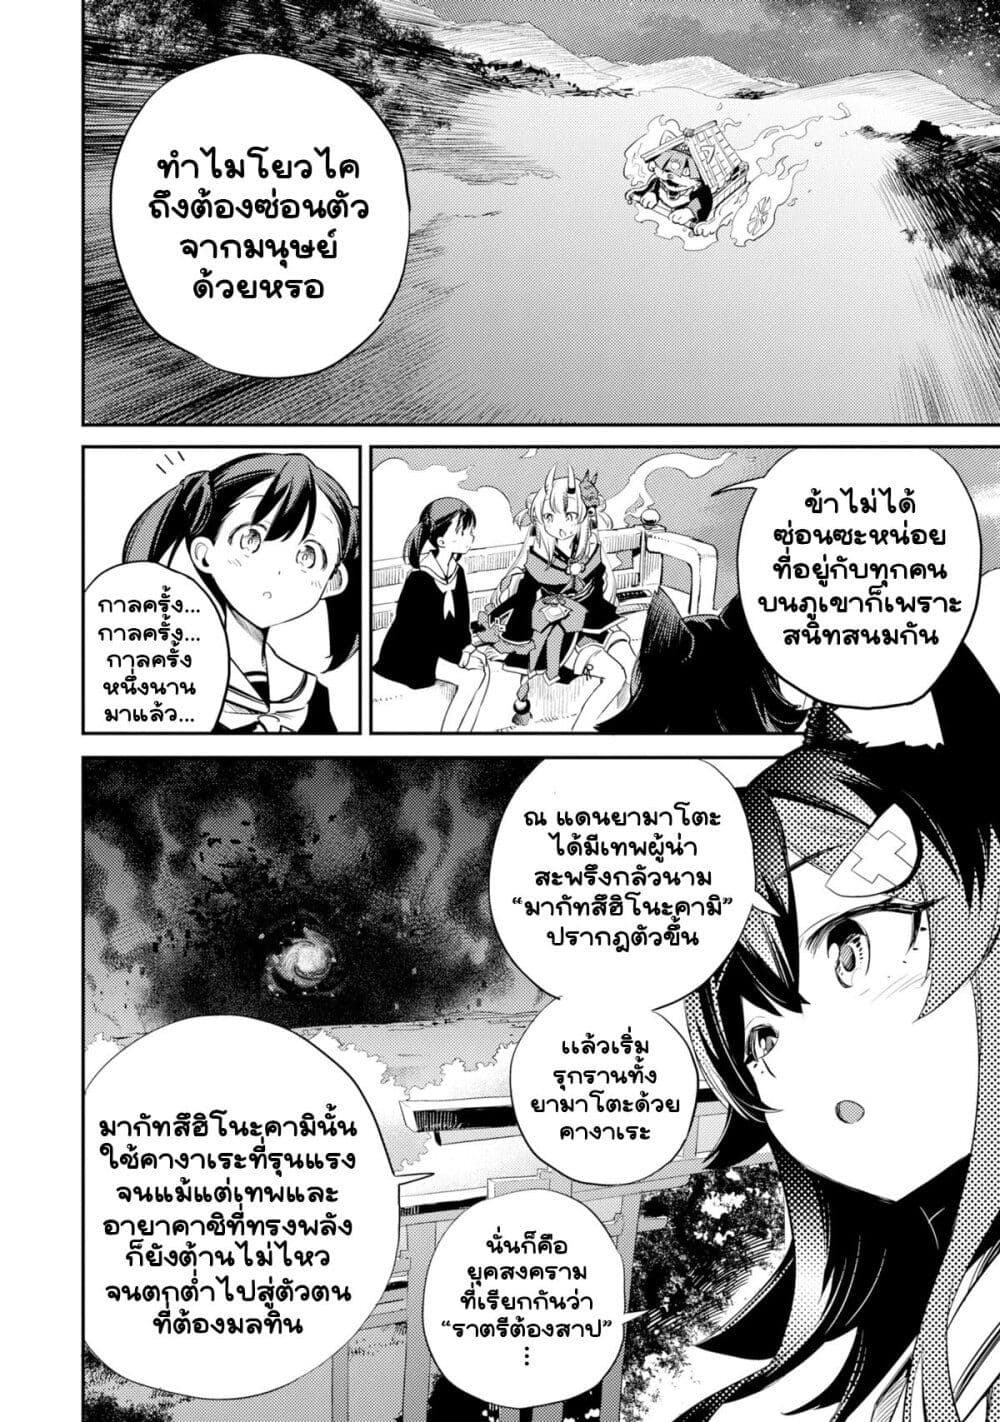 Holoearth Chronicles SideE ~Yamato Phantasia~ ตอนที่ 14 (4)